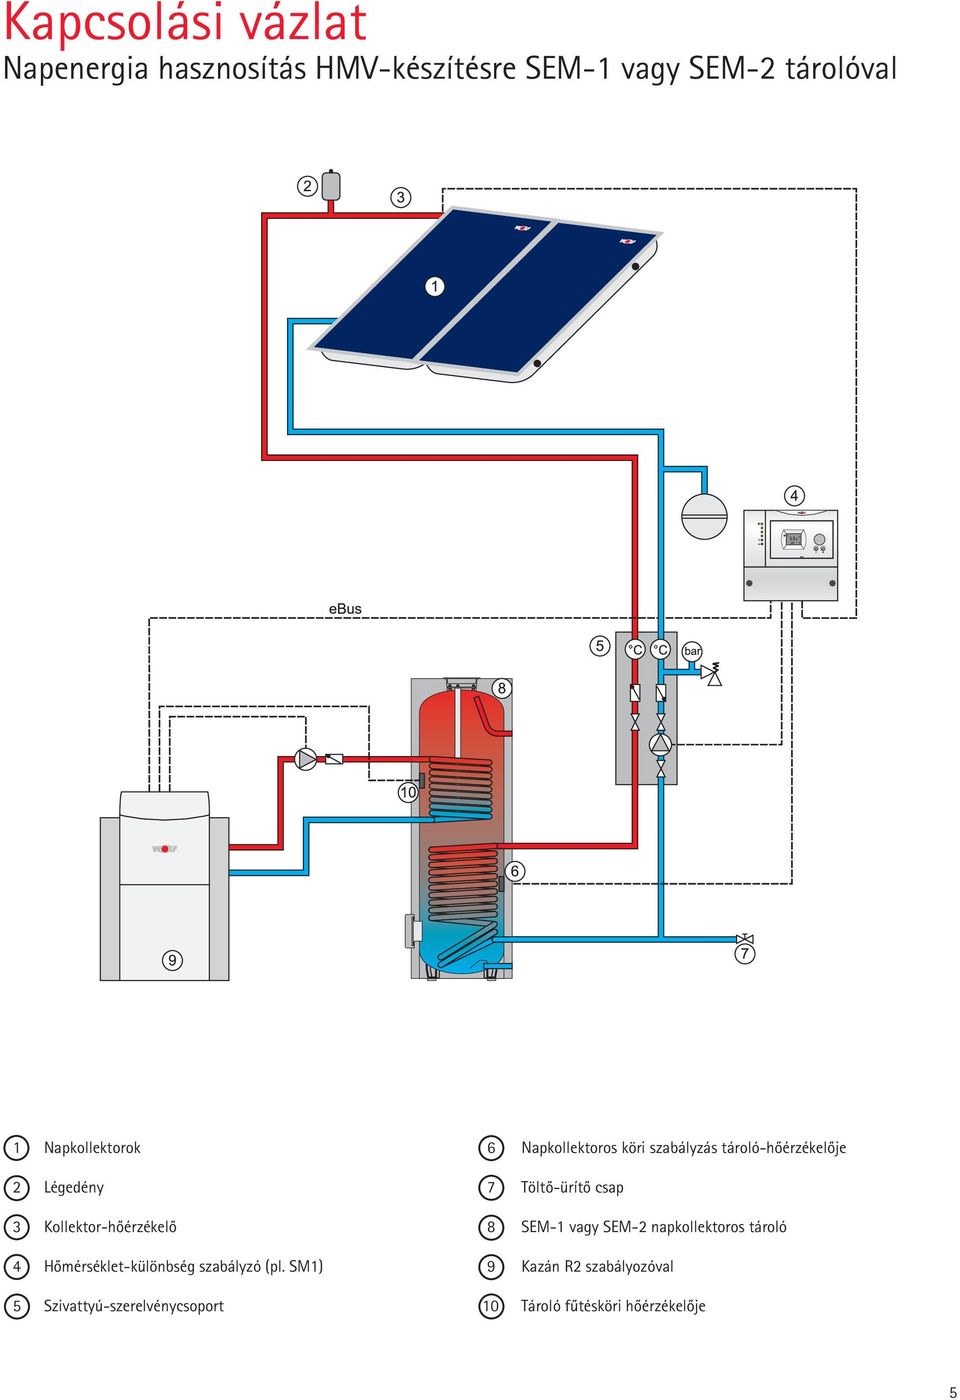 csap 3 Kollektor-hôérzékelô 8 SEM-1 vagy SEM-2 napkollektoros tároló 4 Hômérséklet-különbség